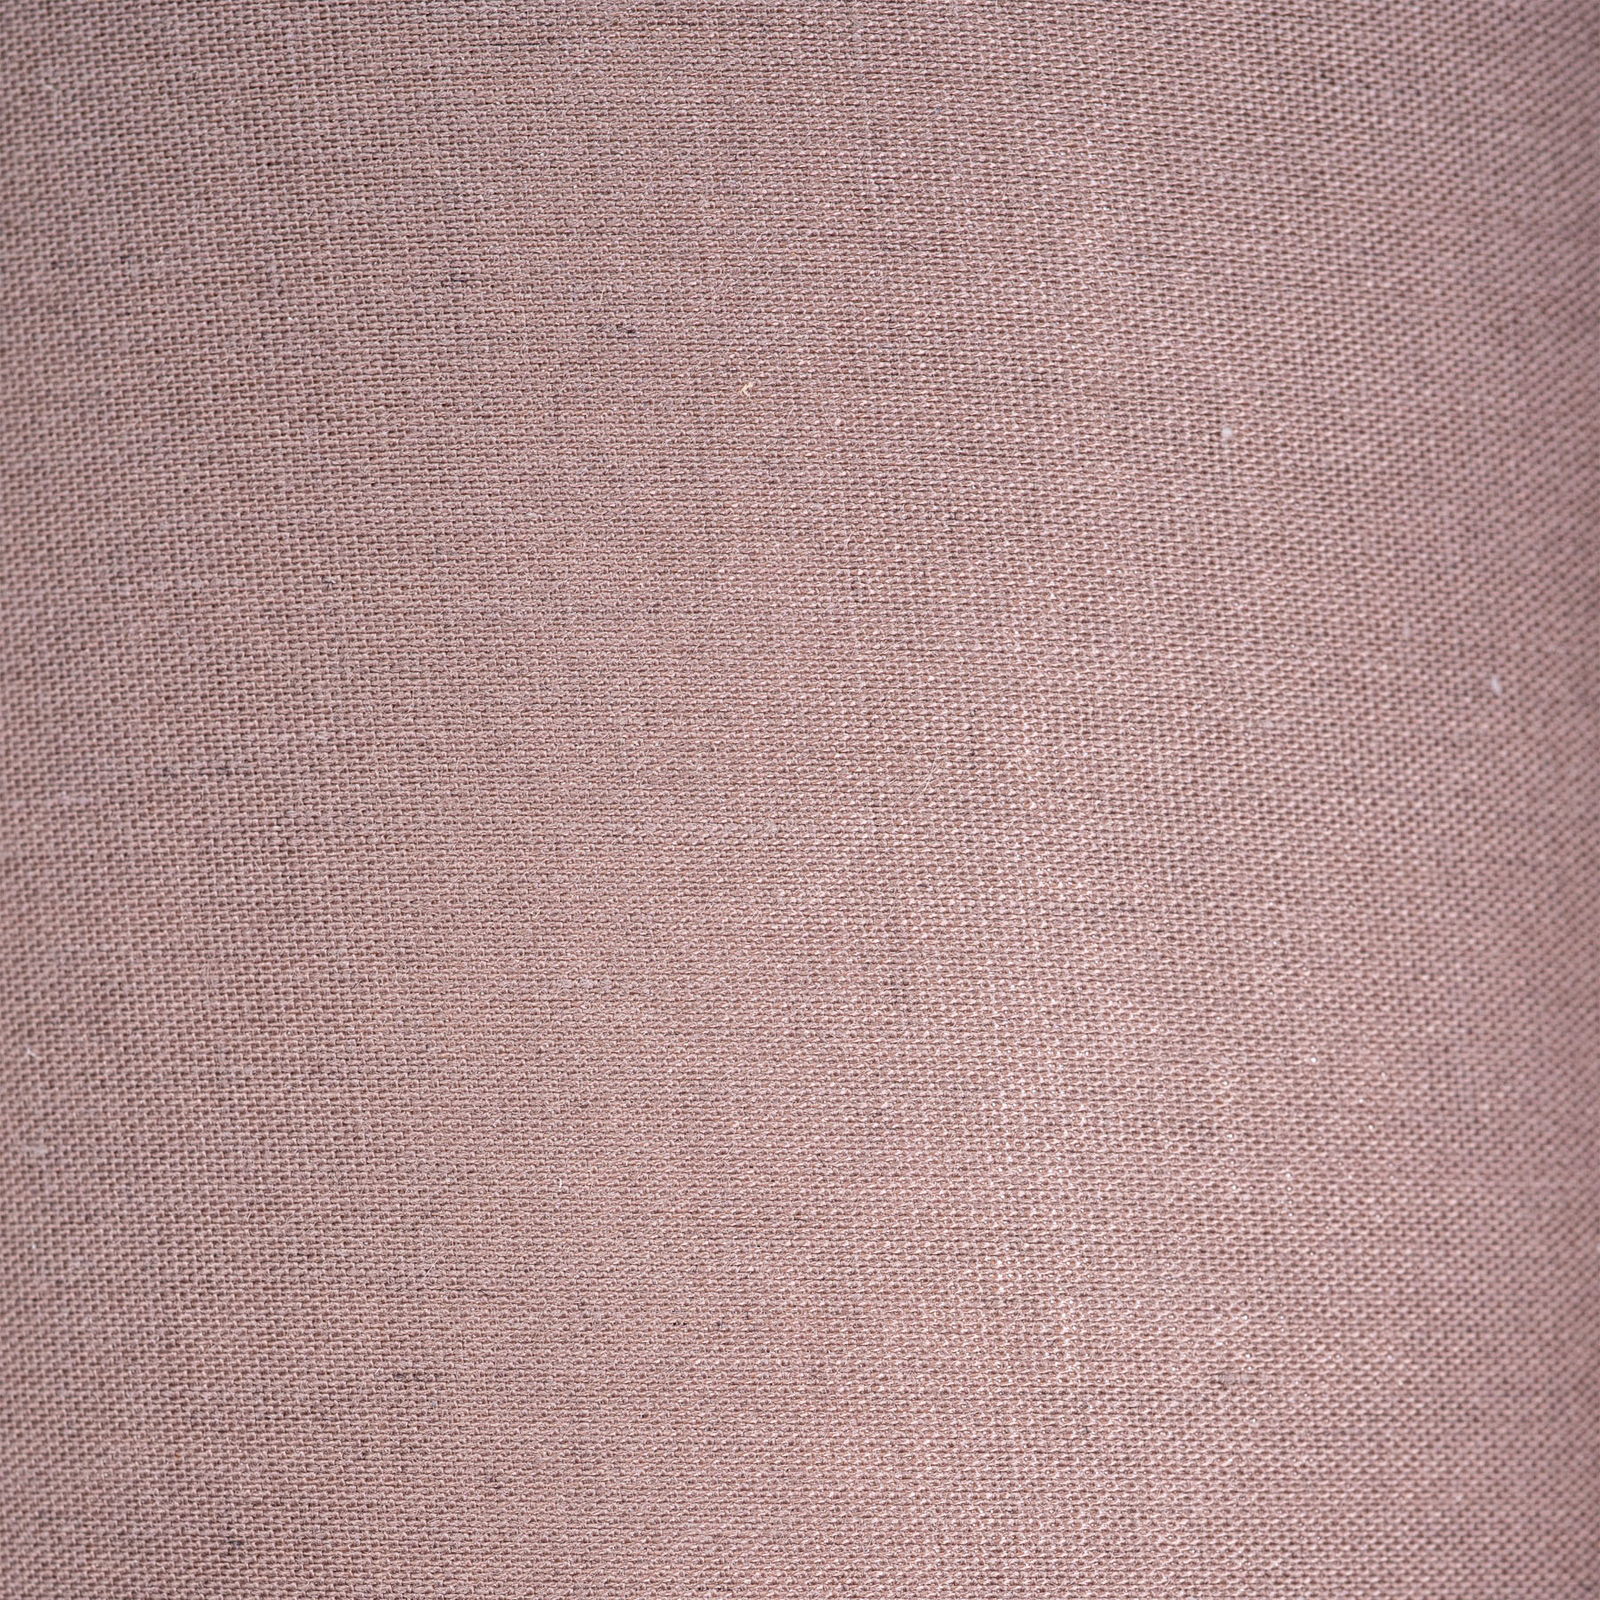 Stropné svietidlo Maron 1-pl., textil, hnedá/zlatá